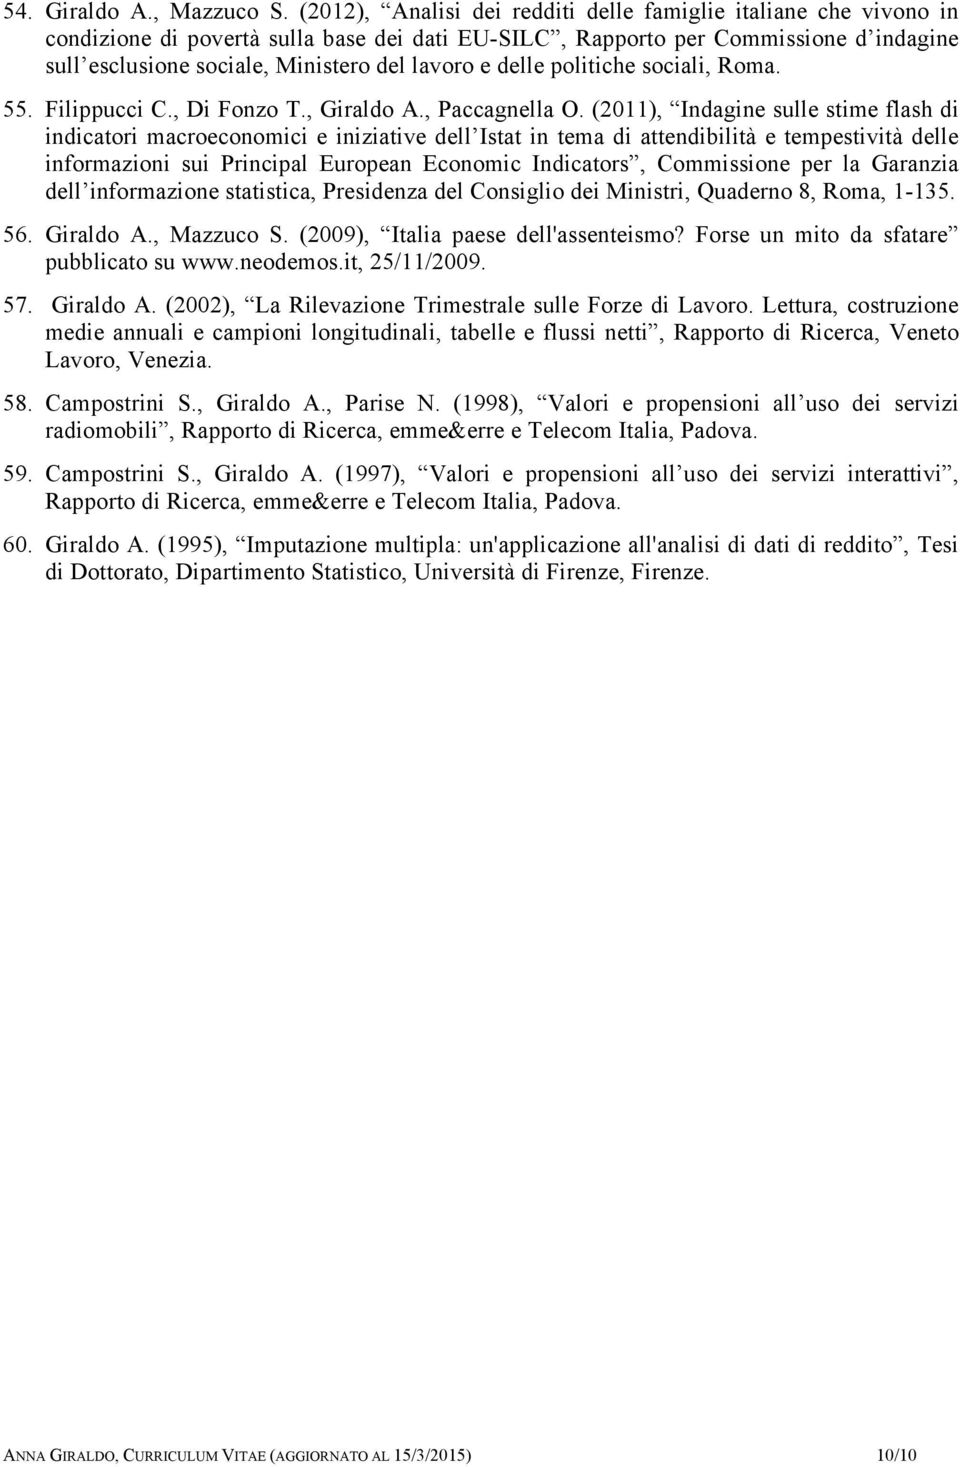 e delle politiche sociali, Roma. 55. Filippucci C., Di Fonzo T., Giraldo A., Paccagnella O.